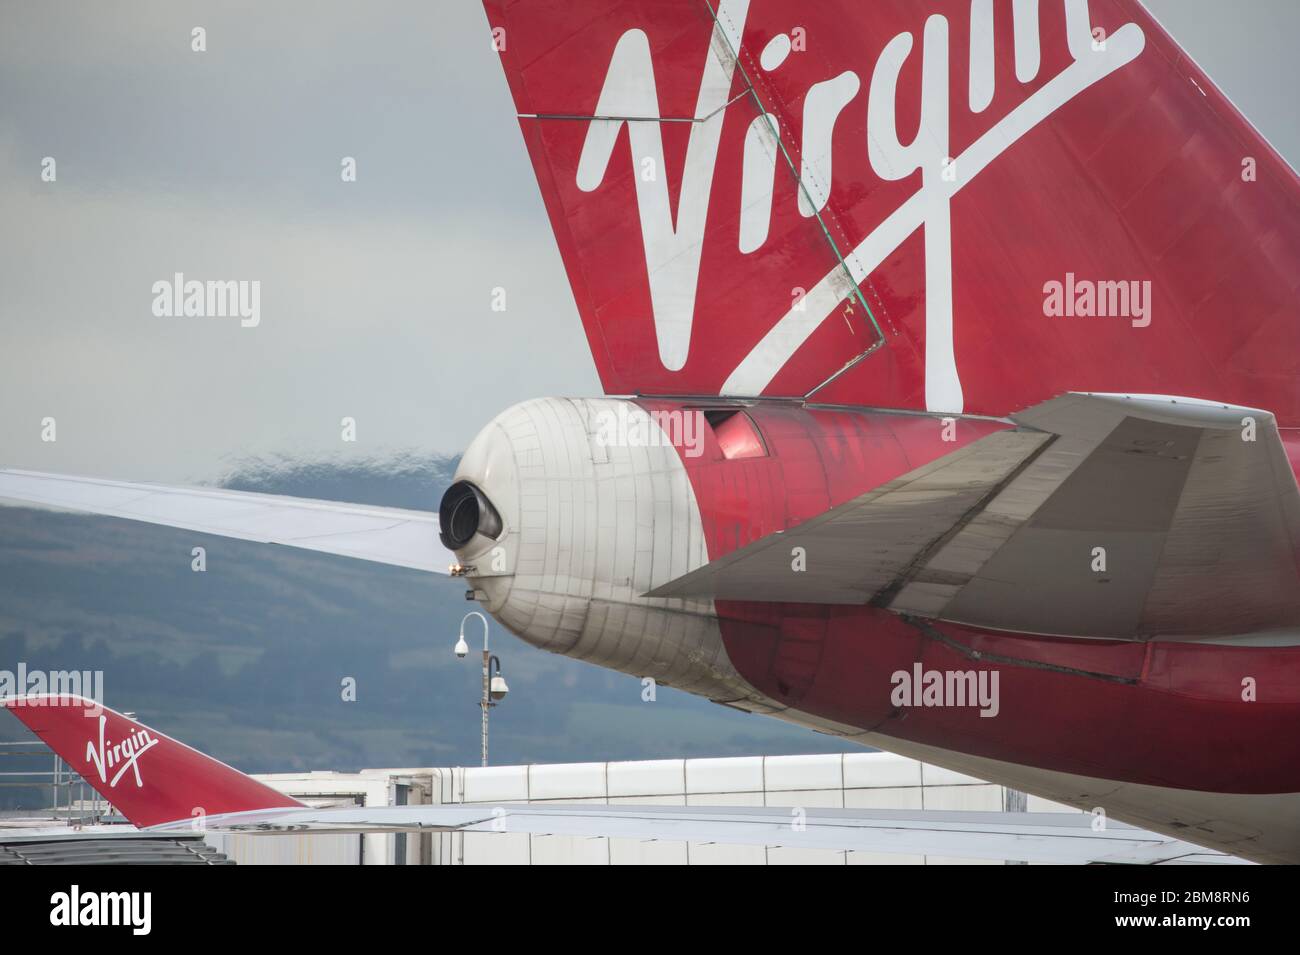 Glasgow, Regno Unito. 25 agosto 2019. Nella foto: Virgin Atlantic Boeing 747-400 reg G-VROM soprannominato Barbarella è uno dei velivoli a lunga percorrenza a grande die body della flotta di svago di Virgin. Normalmente, questo aereo copre Londra Gatwick e serve Glasgow 3 volte alla settimana. Foto Stock